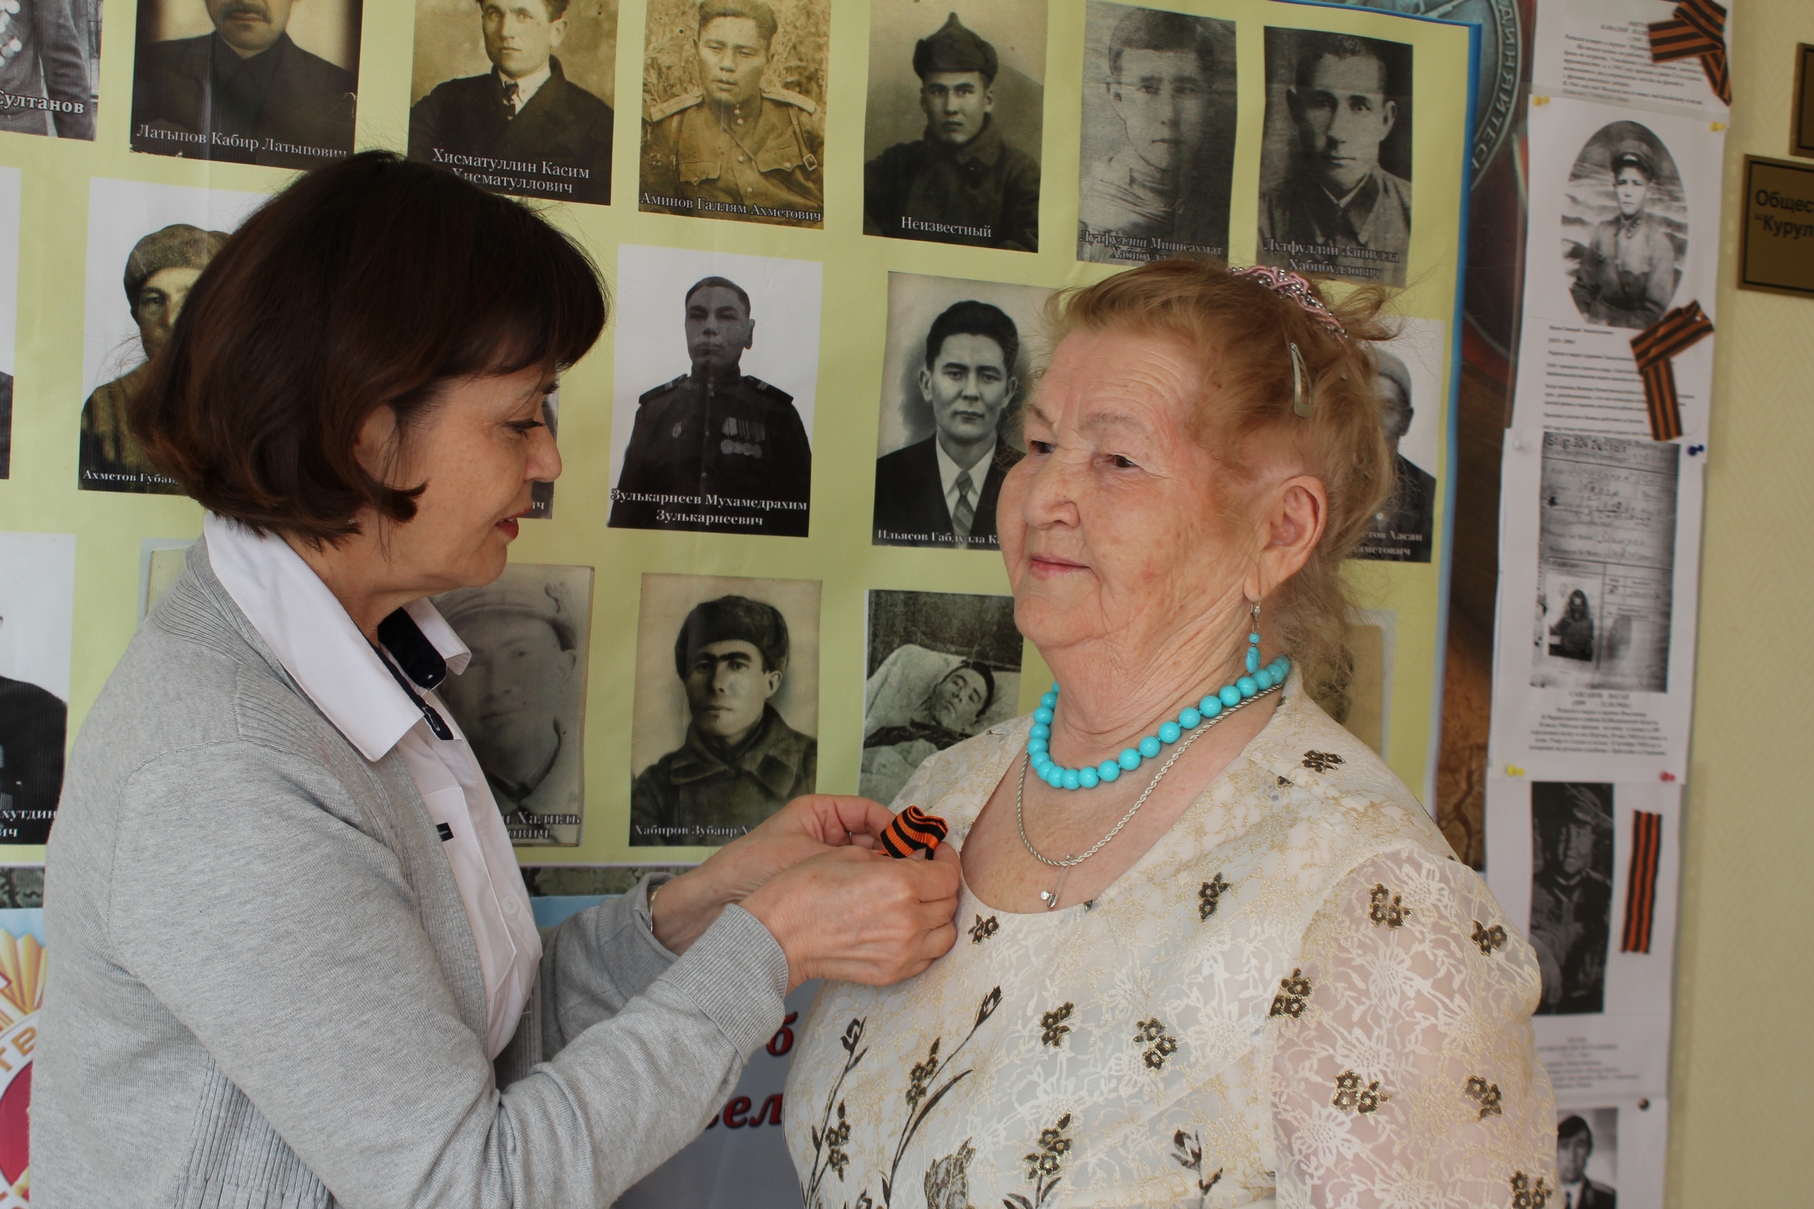 Ветеранов Великой Отечественной войны разных национальностей поздравили в Доме дружбы народов